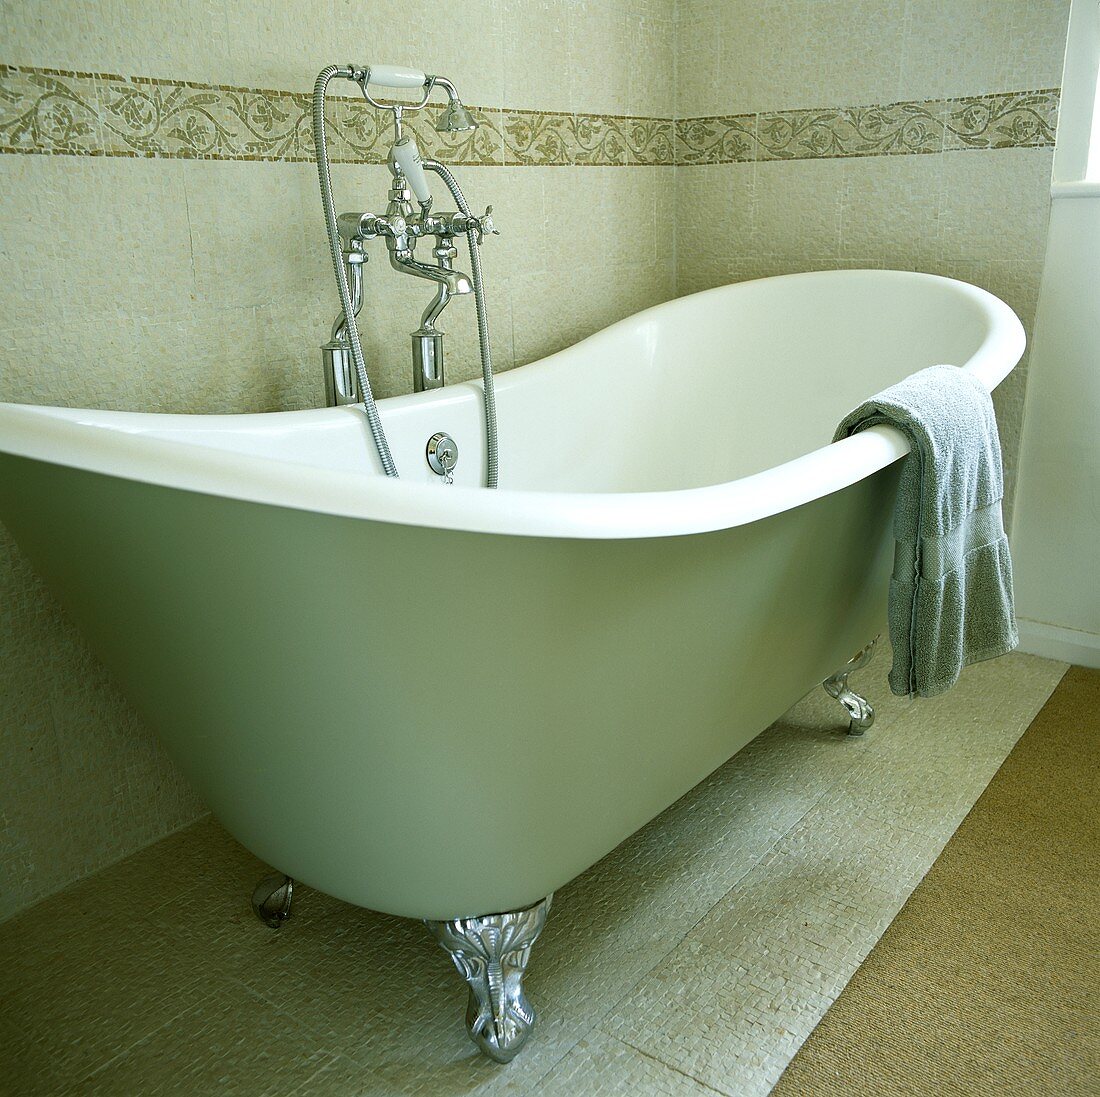 Lindgrüne frei stehende Badewanne mit Krallenfüssen und verchromter Handbrause